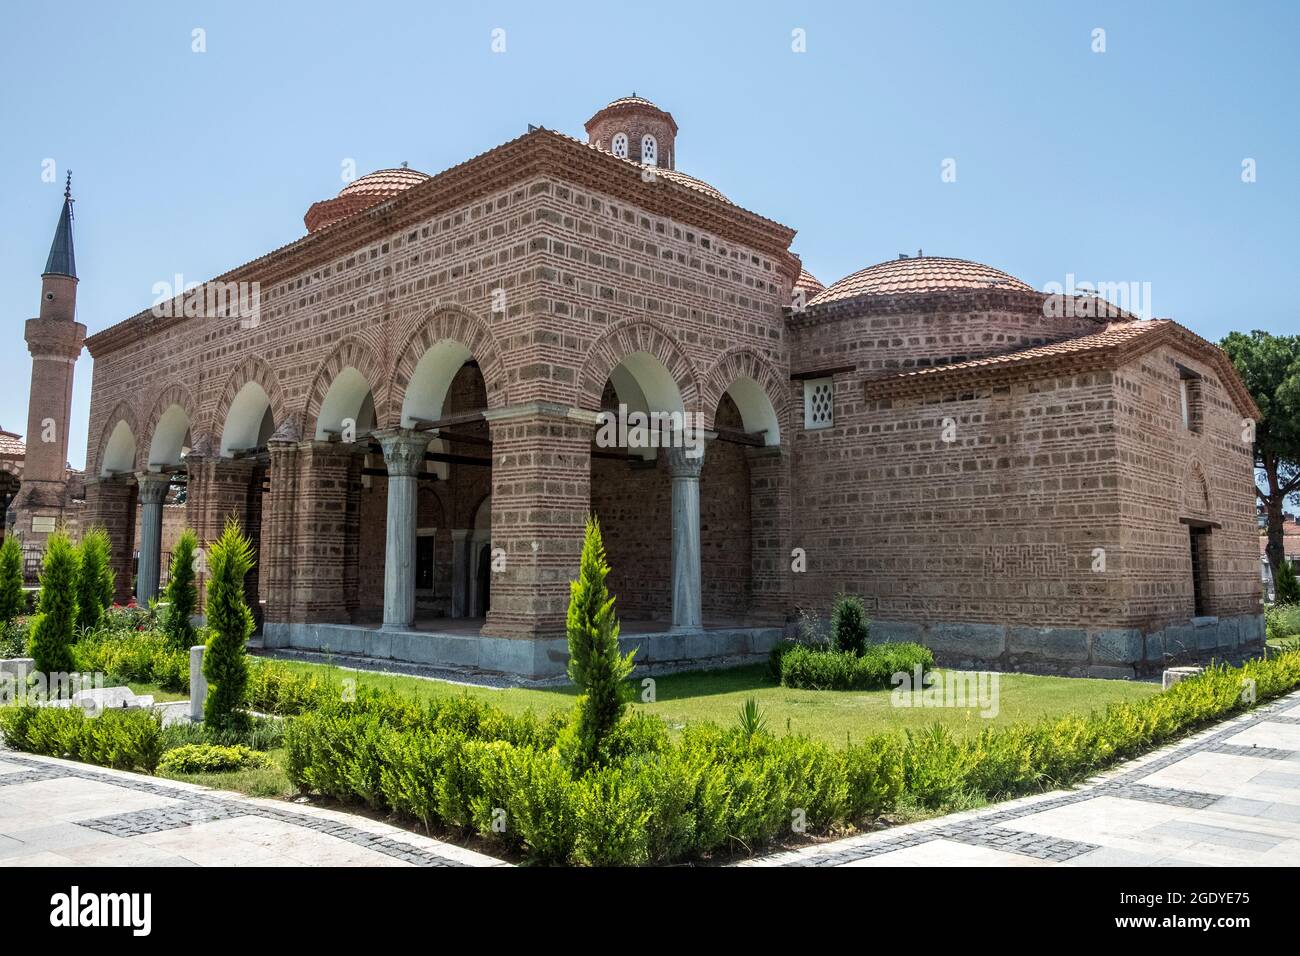 İznik ist eine so historische und alte Stadt, dass man es als ein Freilichtmuseum bezeichnen kann. Besuchsdatum 01. Juli 2021 Stockfoto